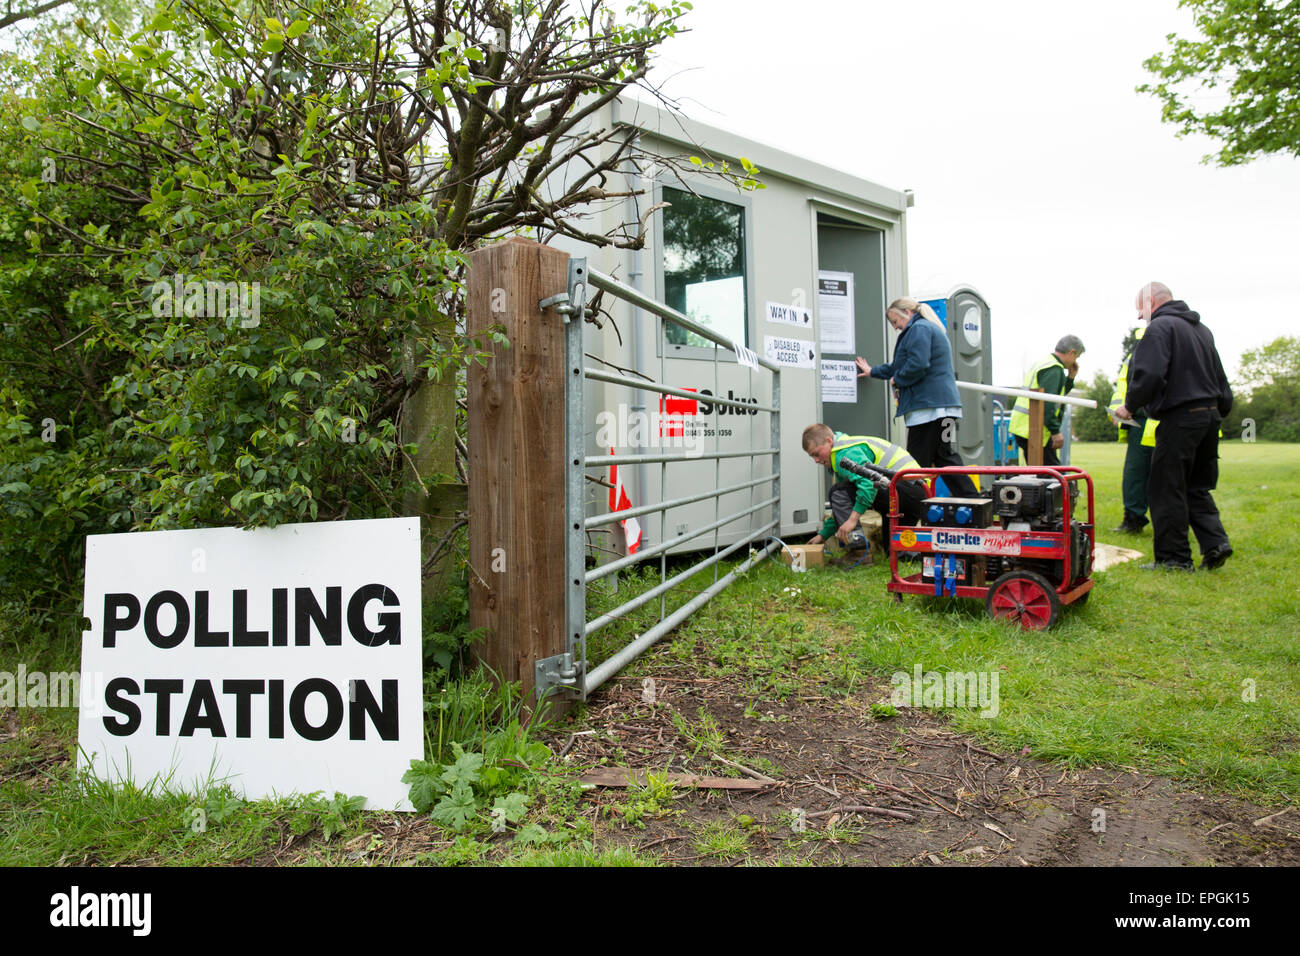 La stazione di polling di Kabin a Buckingham Road, Tamworth, che ha subito un guasto al generatore di energia il giorno del polling mattina. Foto Stock